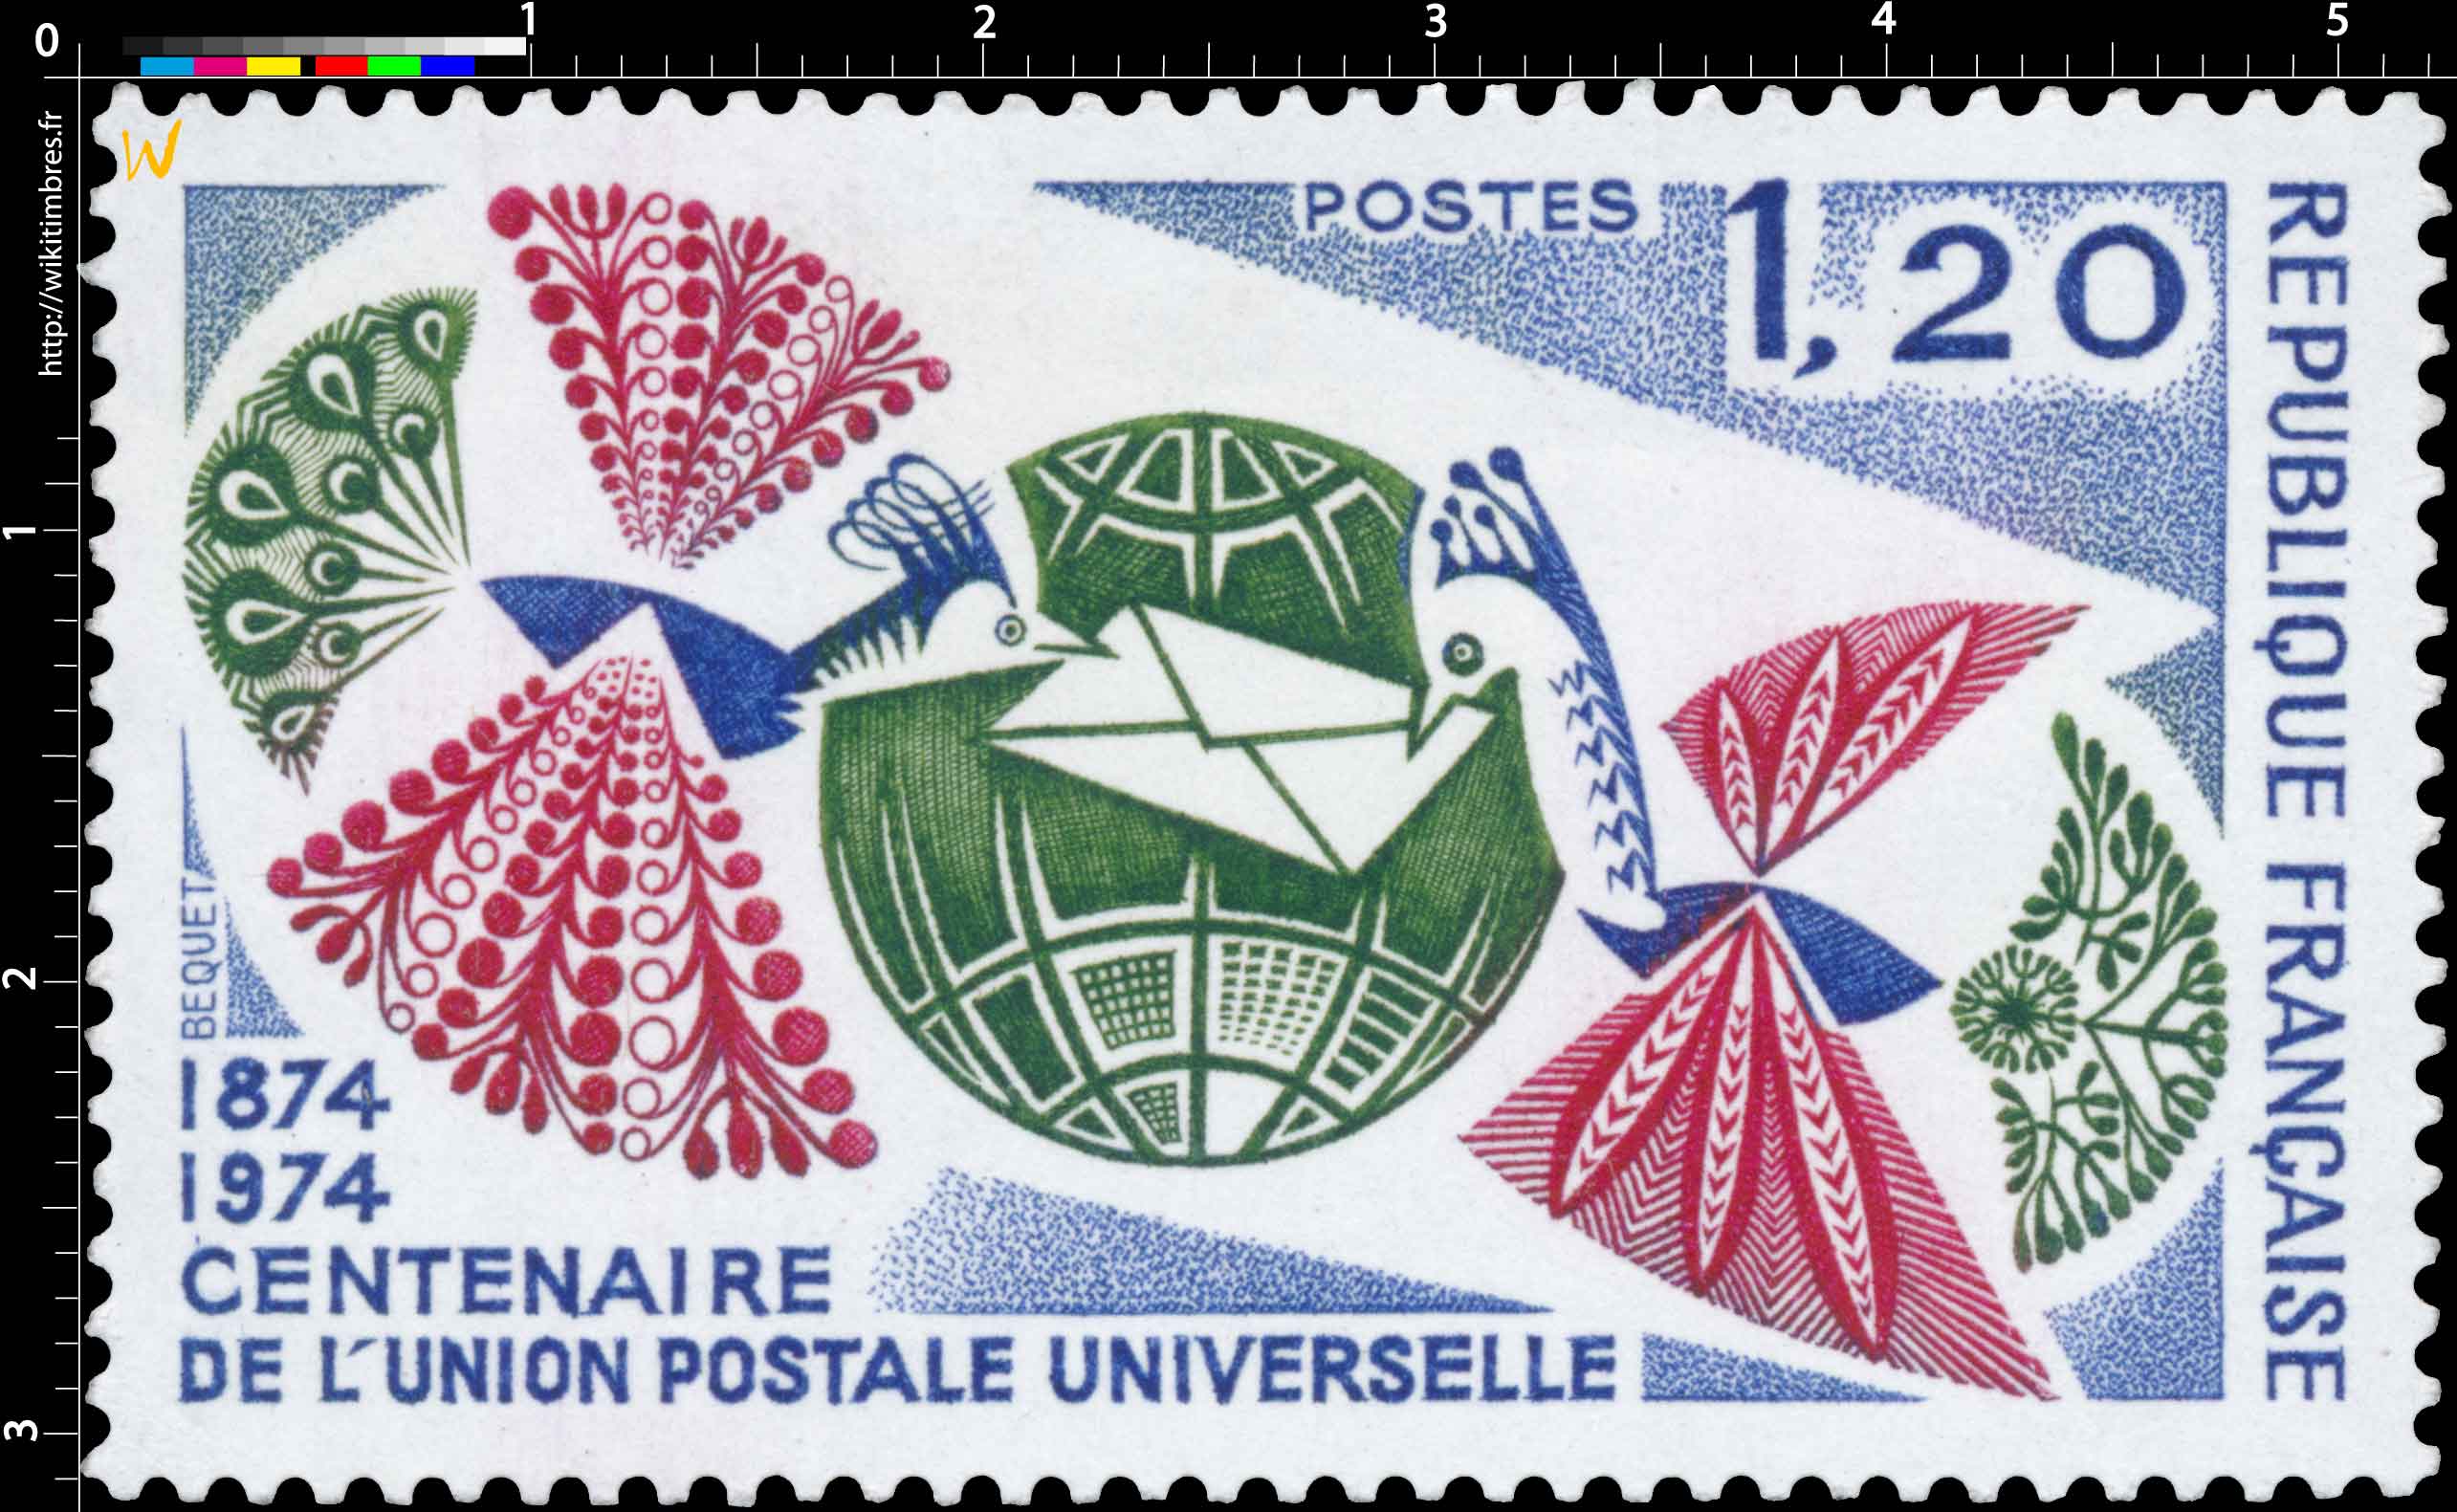 CENTENAIRE DE L'UNION POSTALE UNIVERSELLE 1874-1974